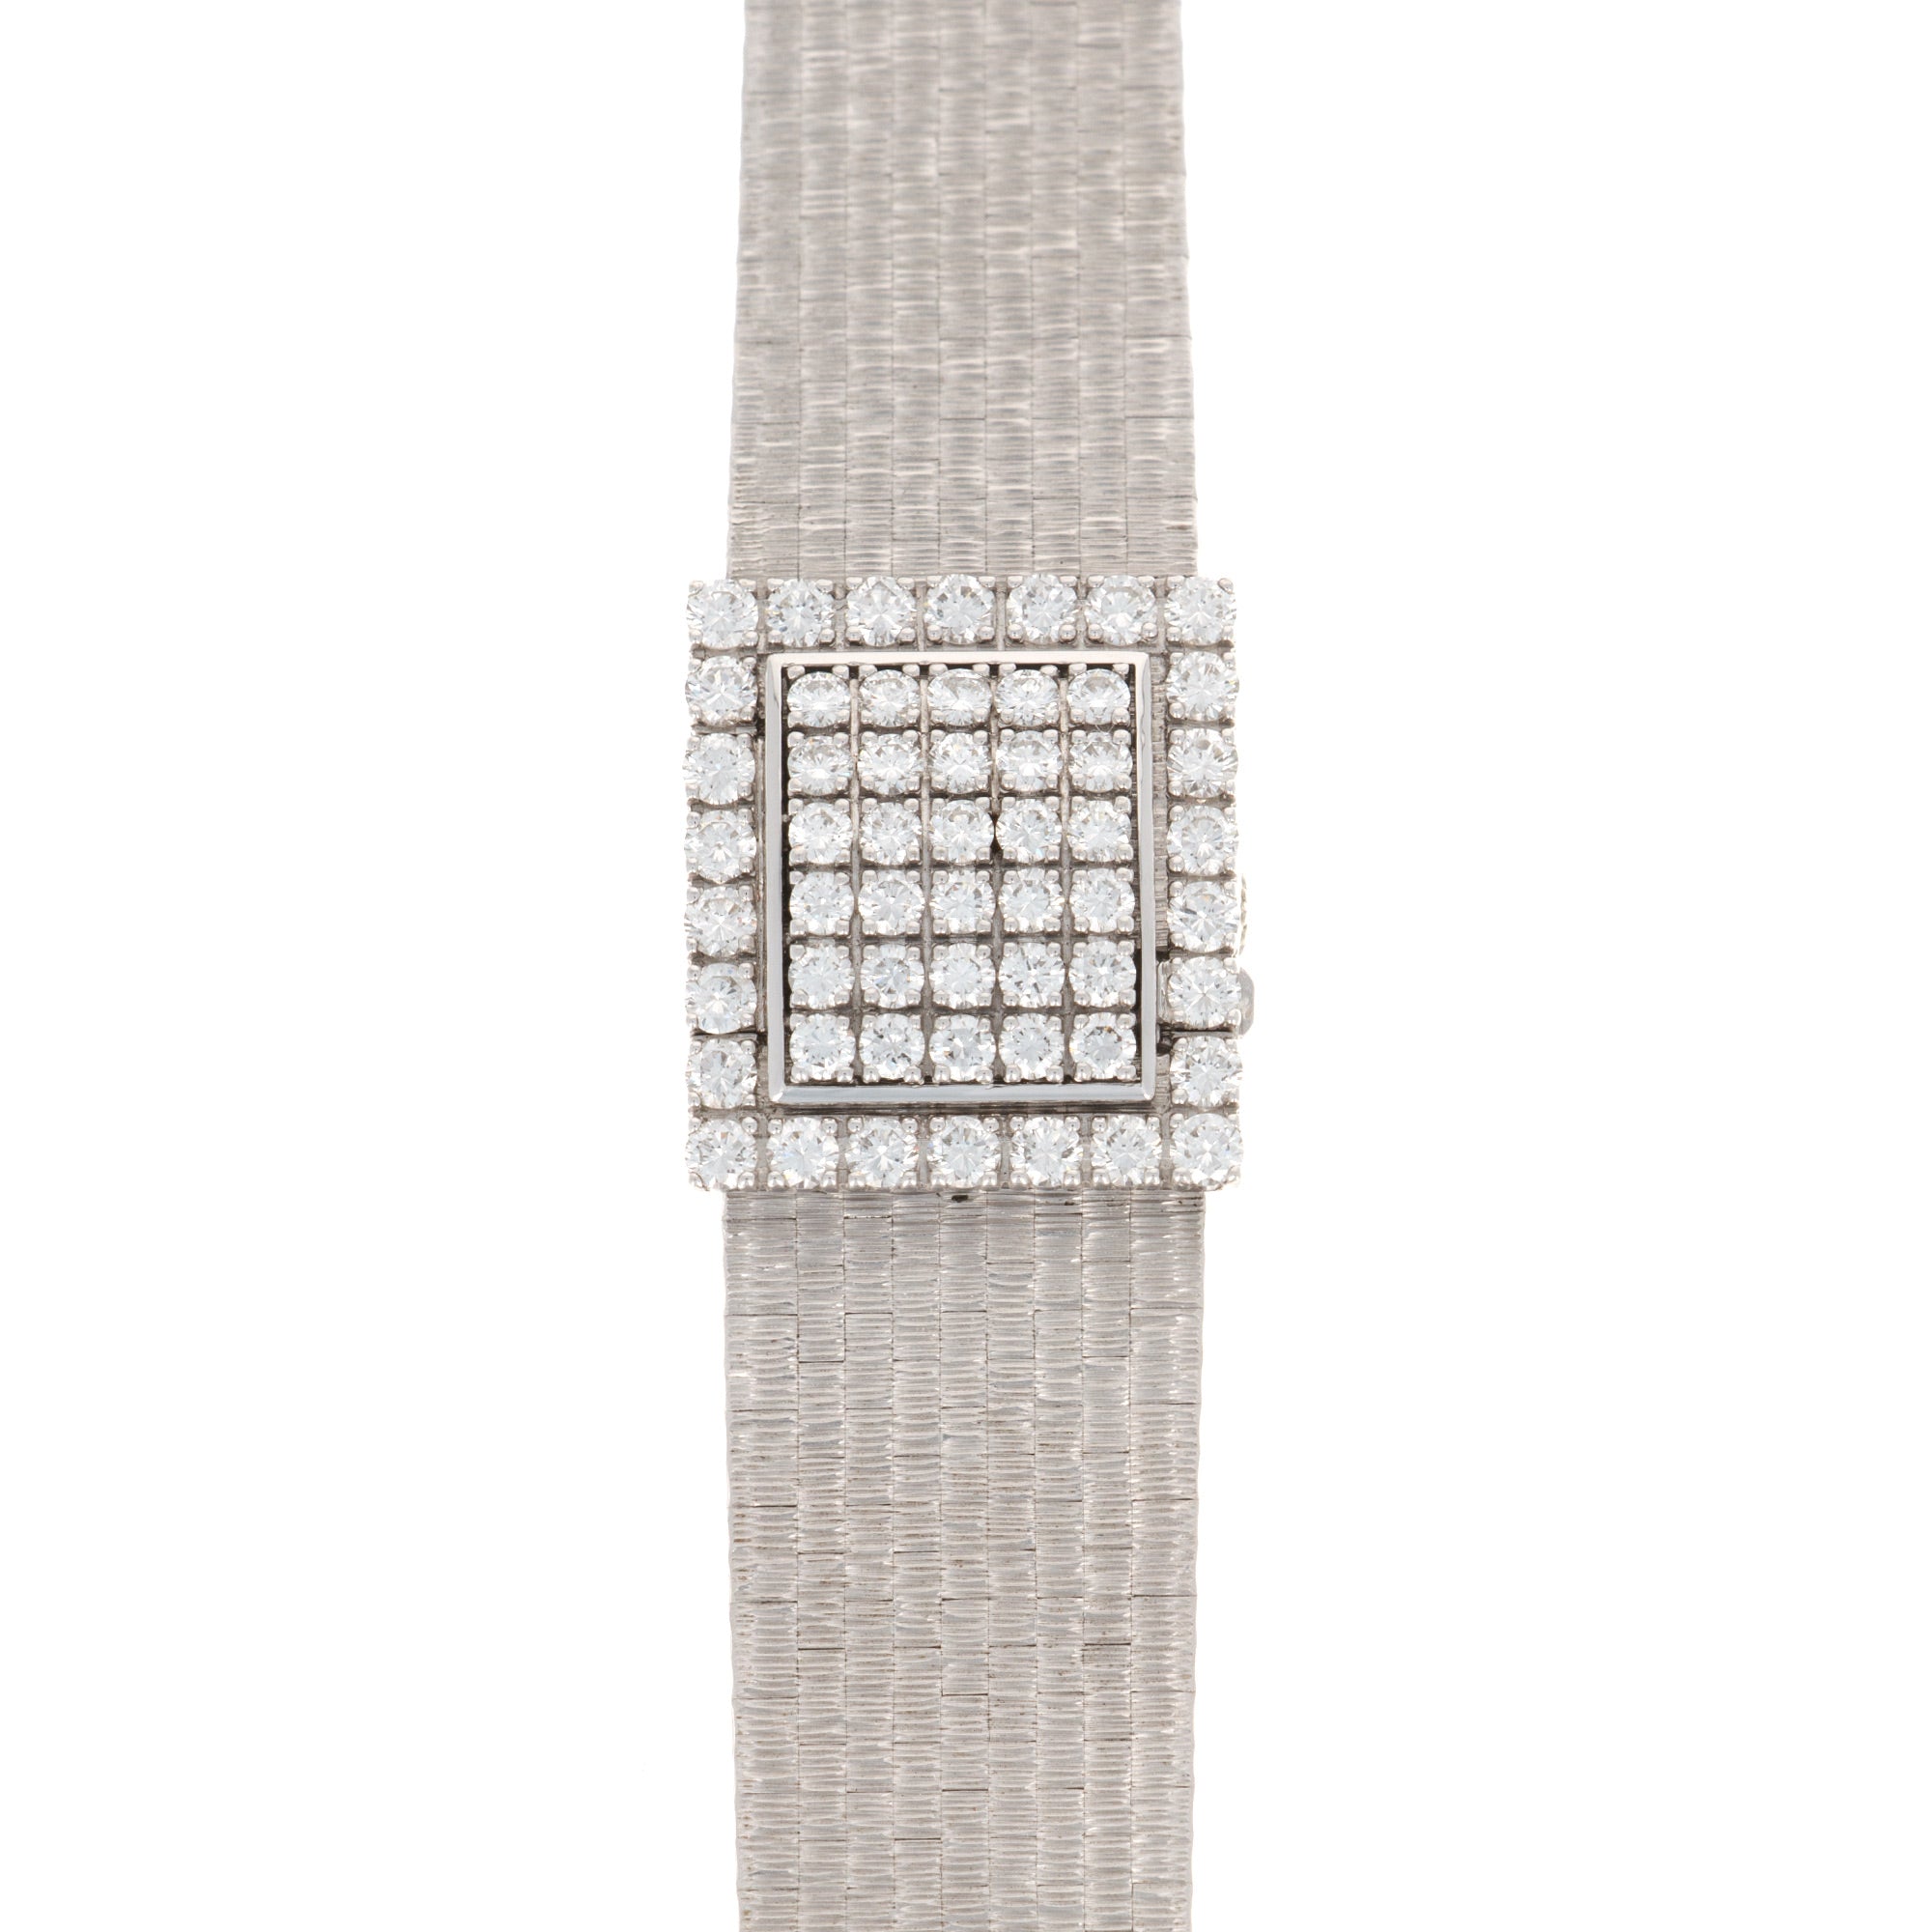 Patek Philippe - Patek Philippe White Gold Diamond Watch, Ref. 3366 - The Keystone Watches